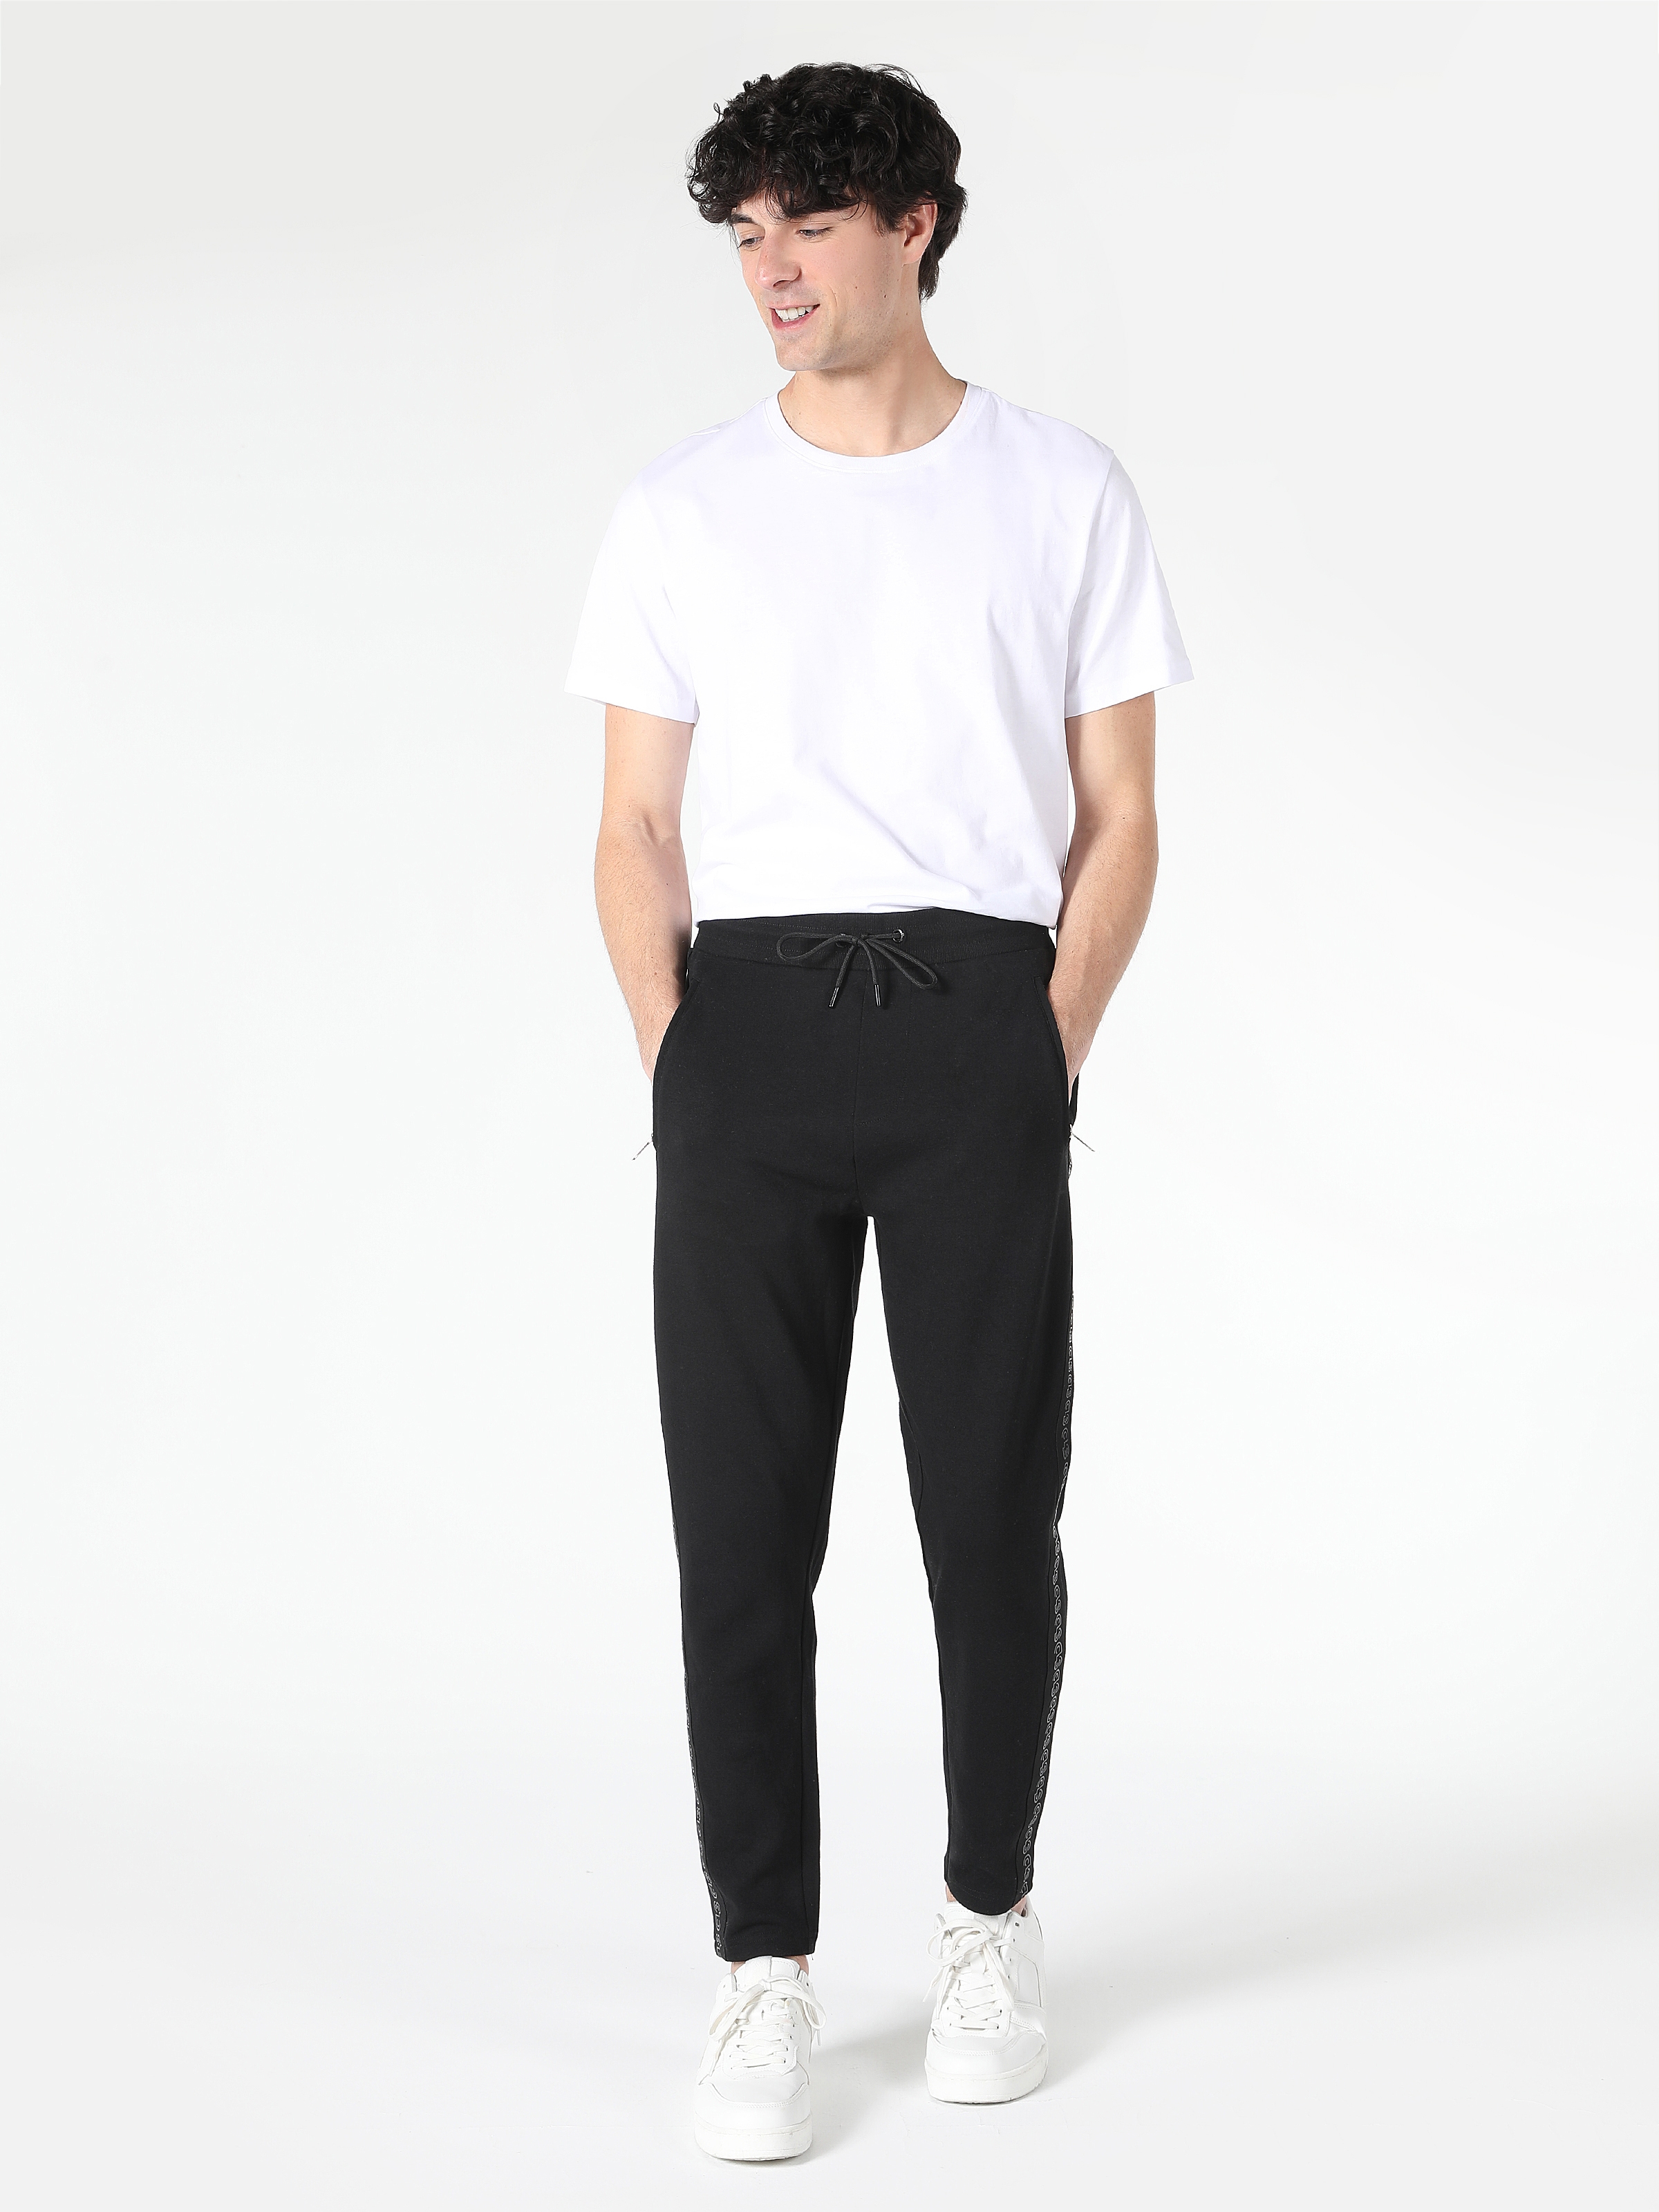 Afficher les détails de Pantalon De Survêtement Noir Multi-Poches Taille Moyenne Coupe Slim Pour Homme